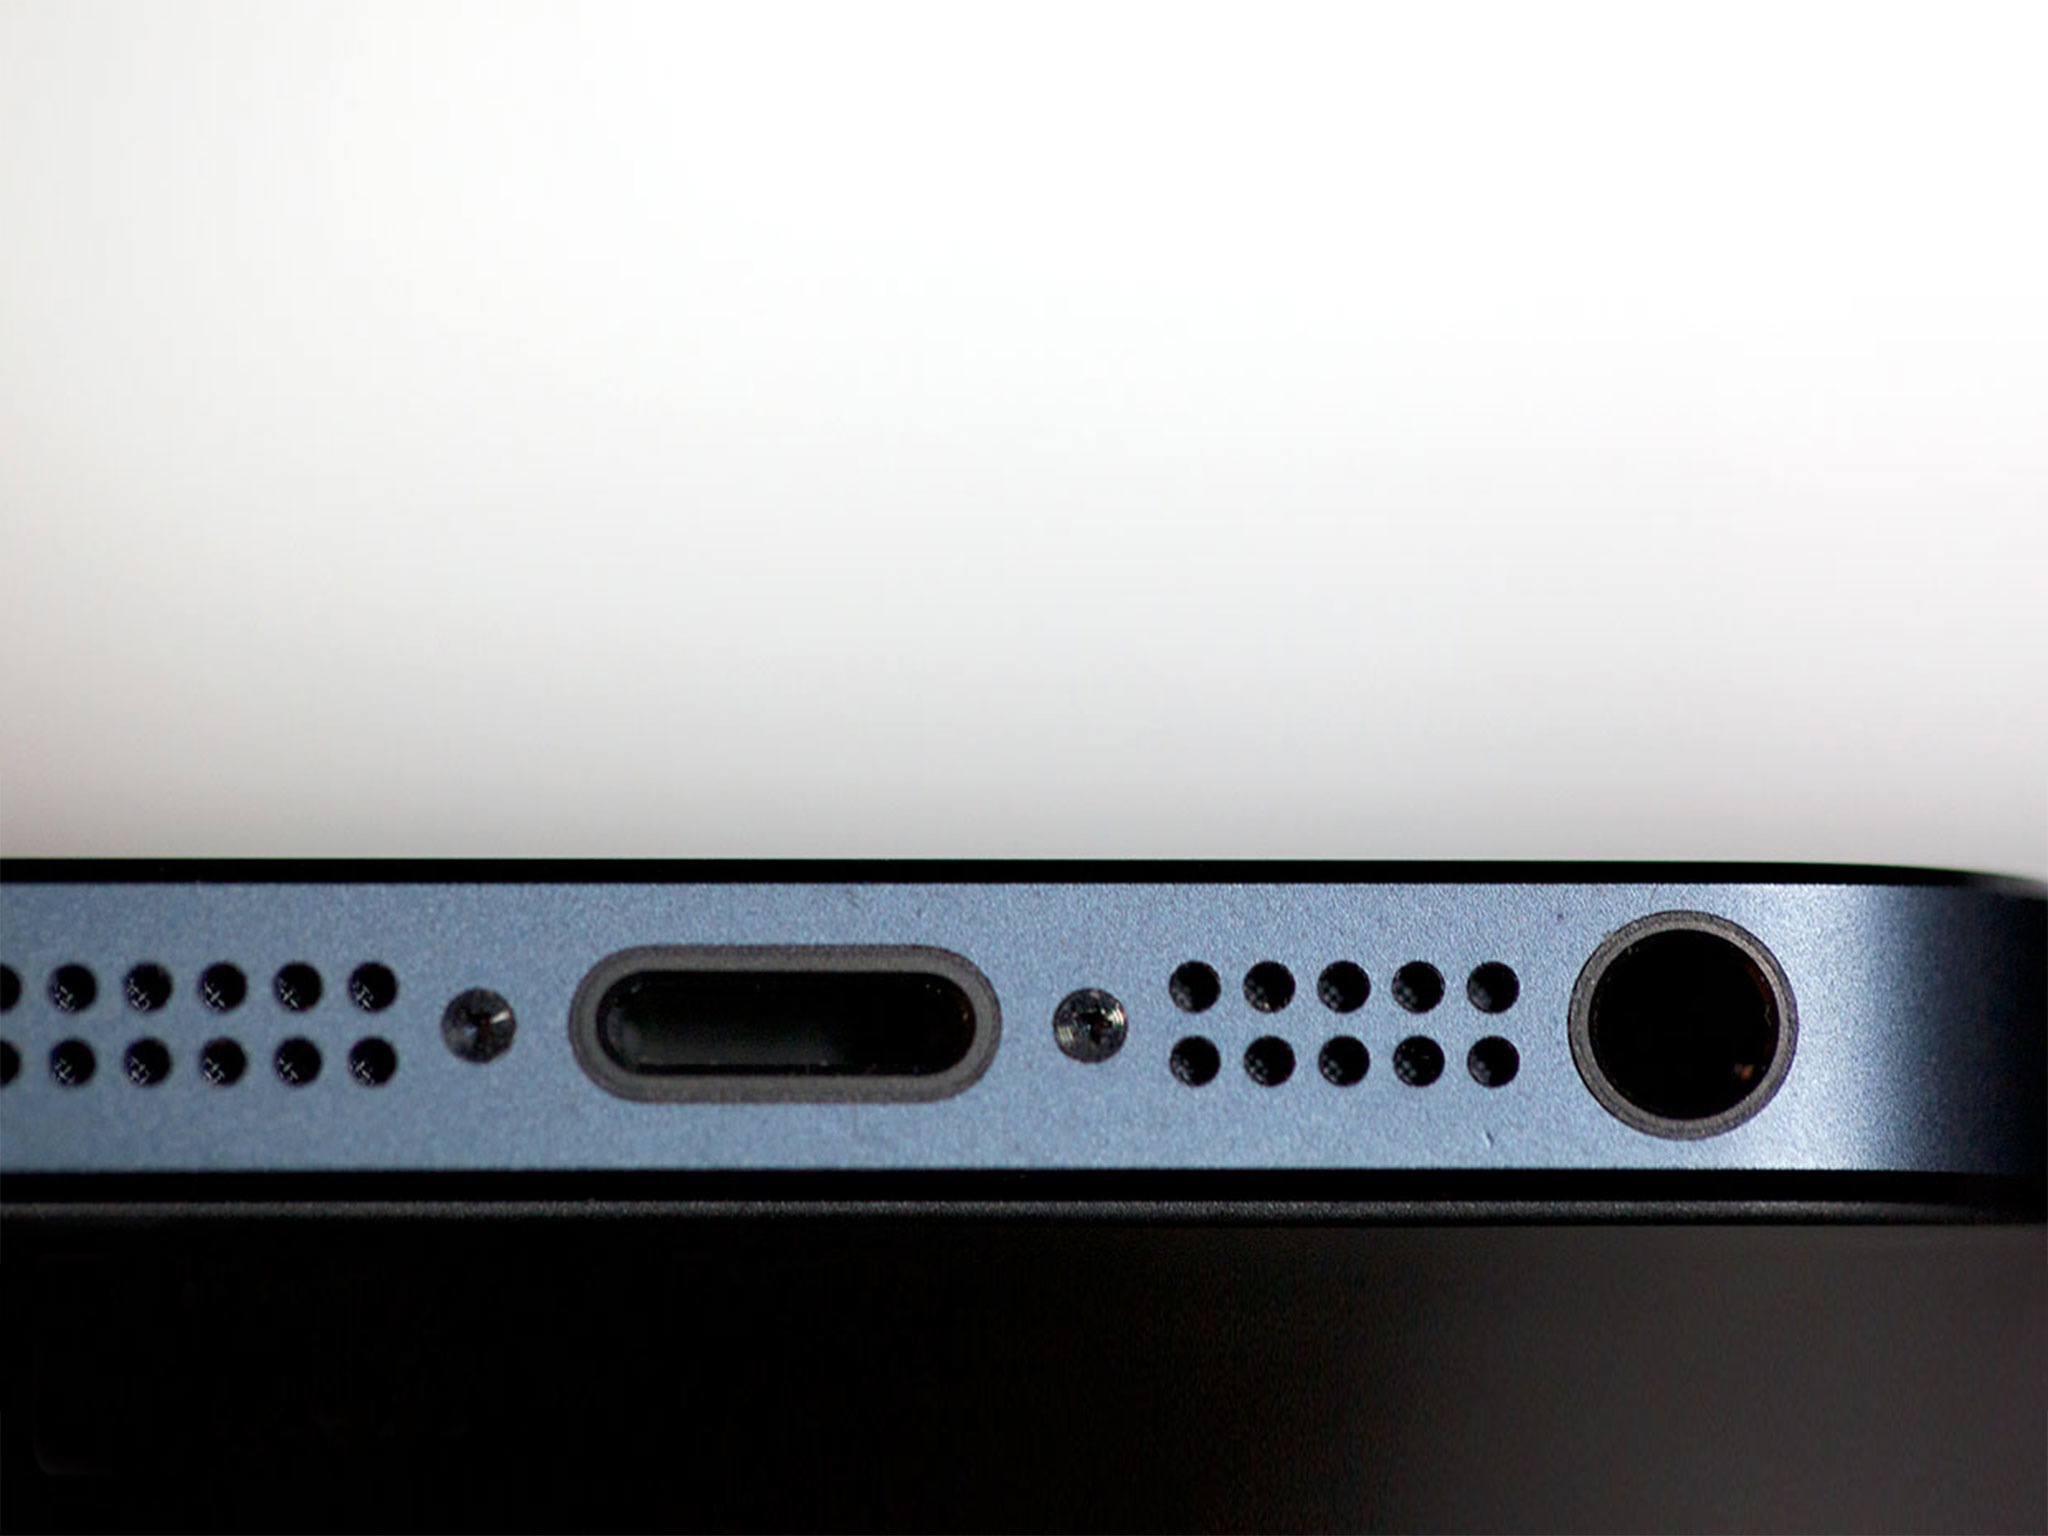 Comment remplacer le haut-parleur d'un iPhone 5